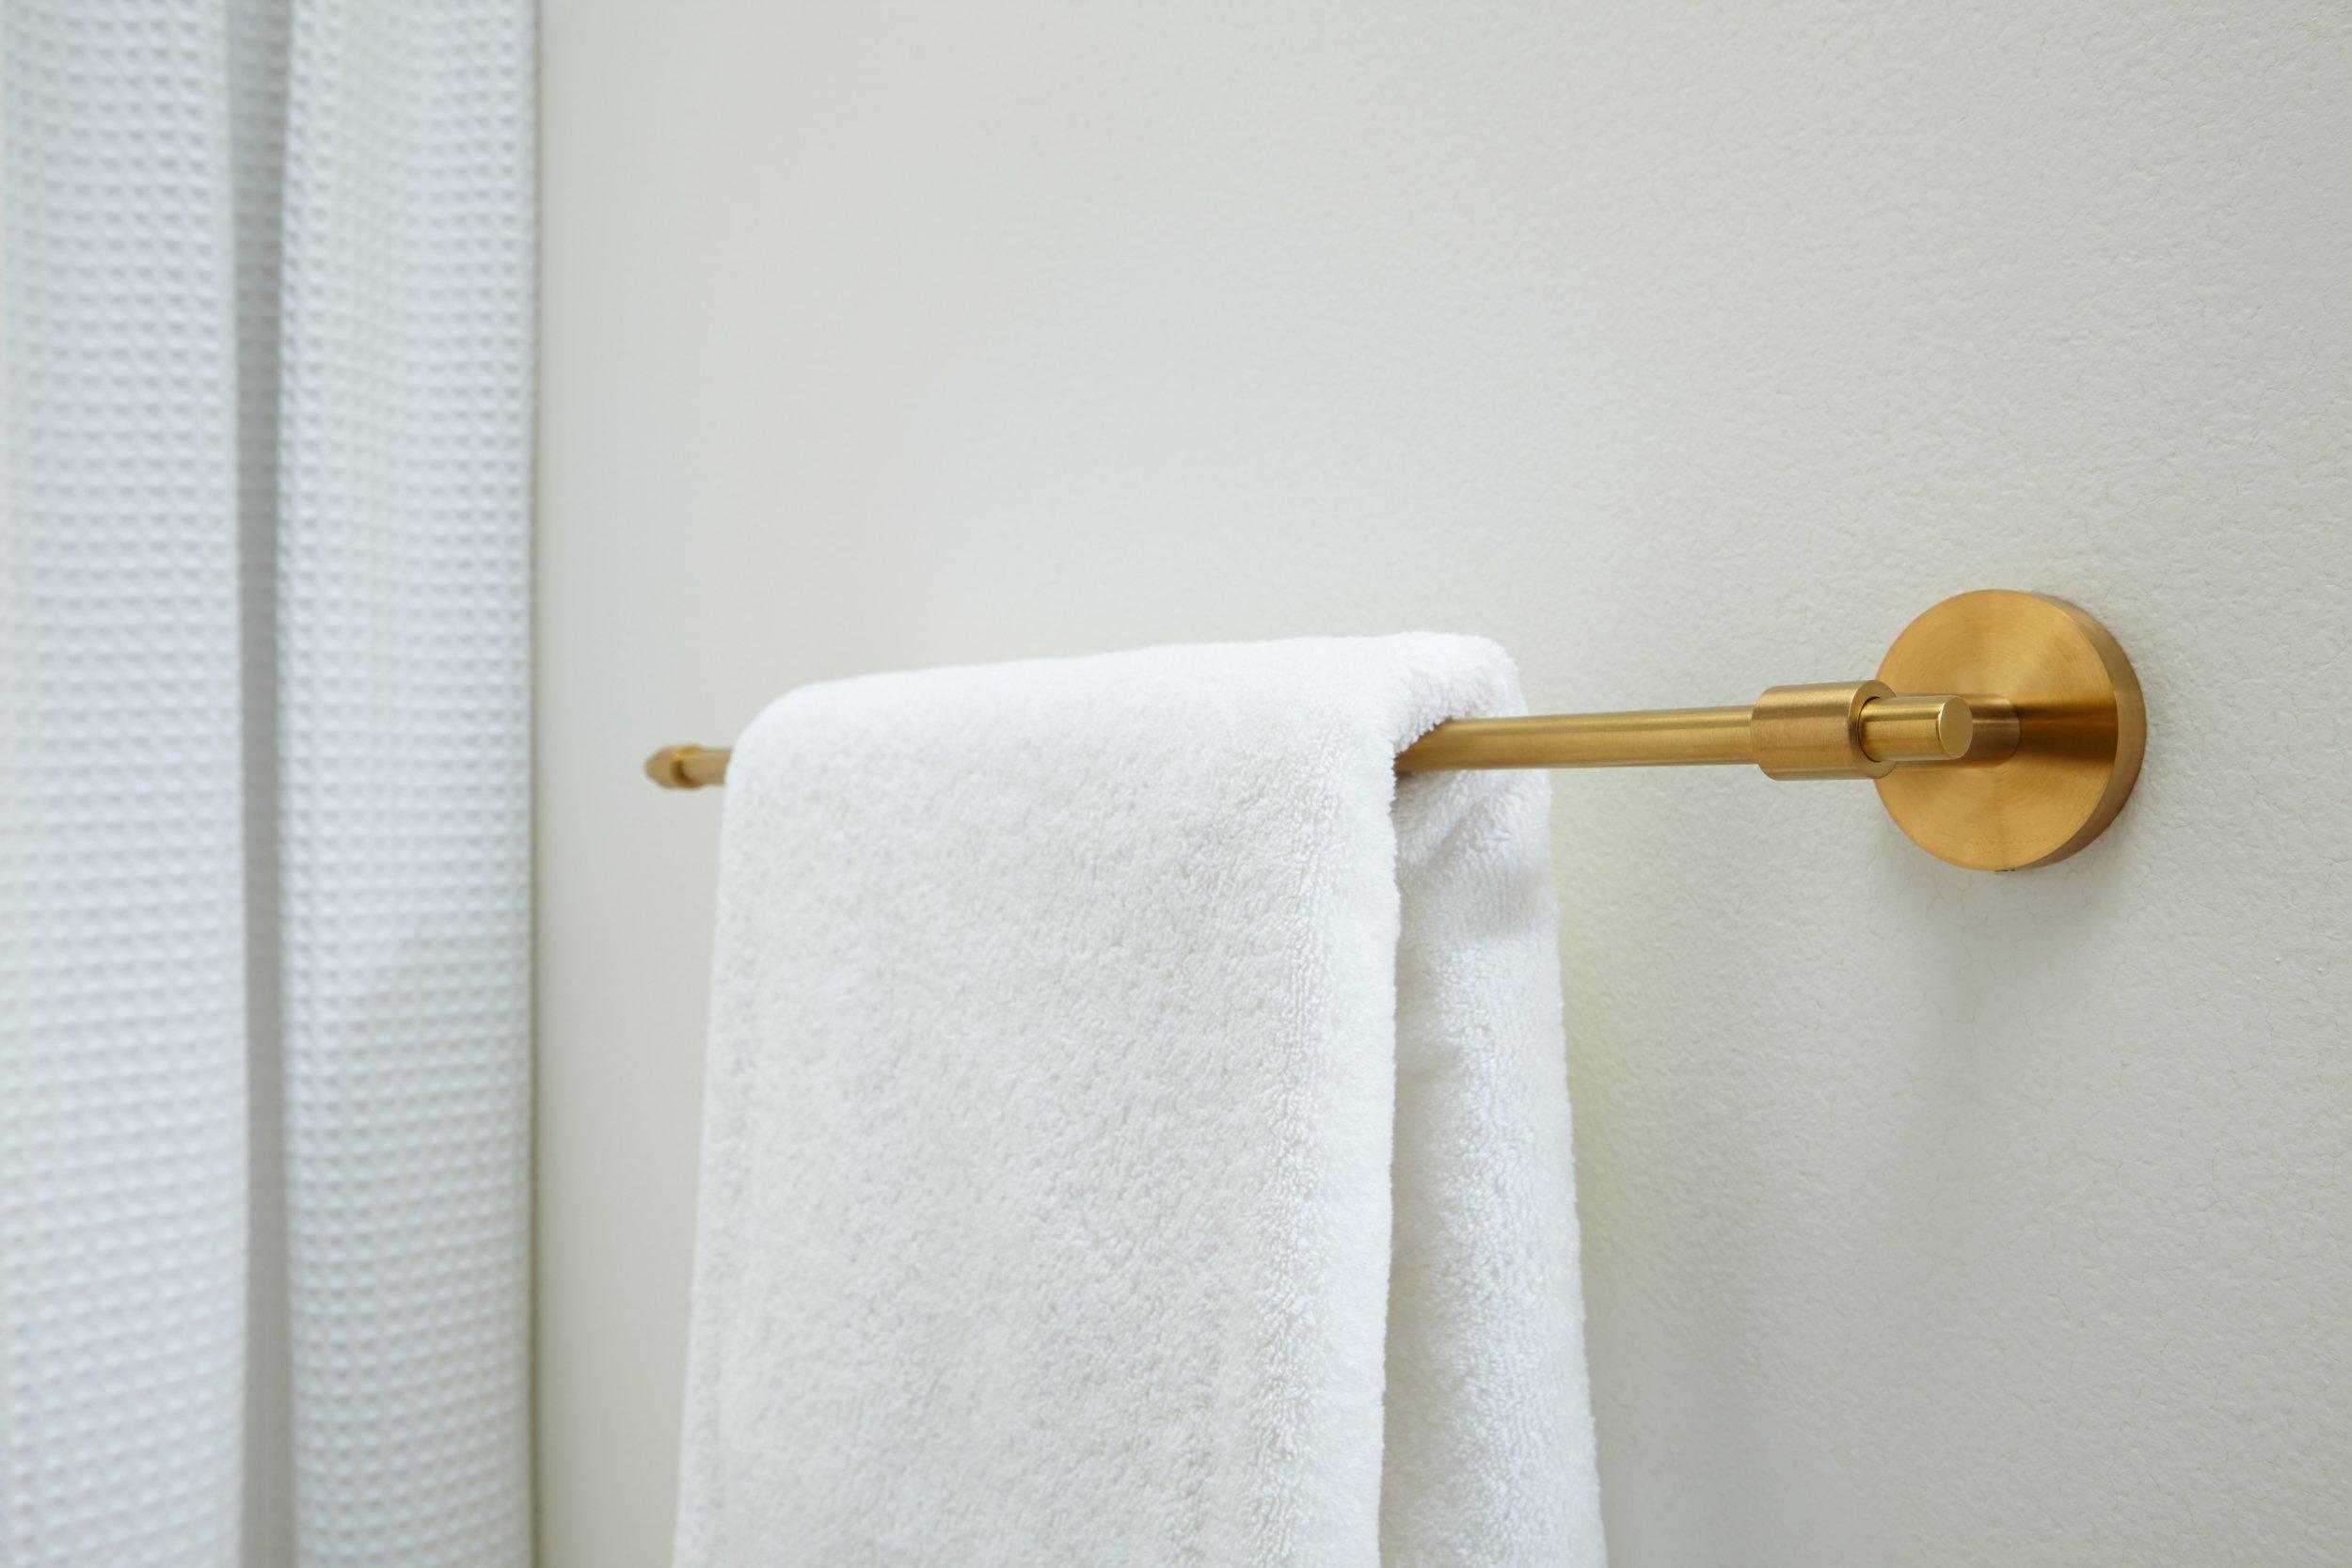 Co-t Gold Towel Bar - Self Adhesive Towel Holder + 2 Packs Towel